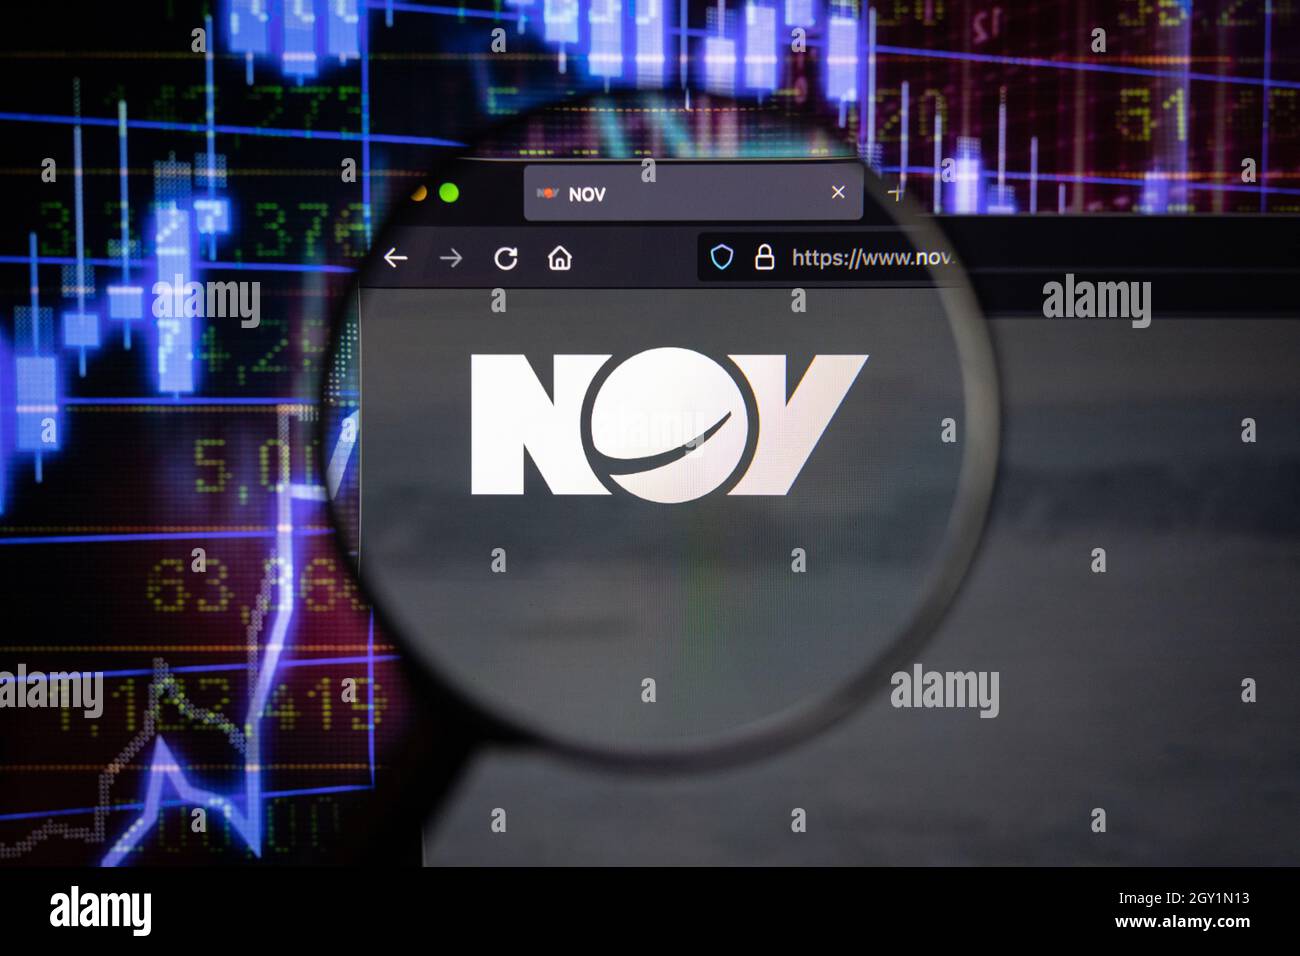 NOV azienda logo su un sito web con blurry sviluppi del mercato azionario in background, visto su uno schermo del computer attraverso una lente d'ingrandimento Foto Stock